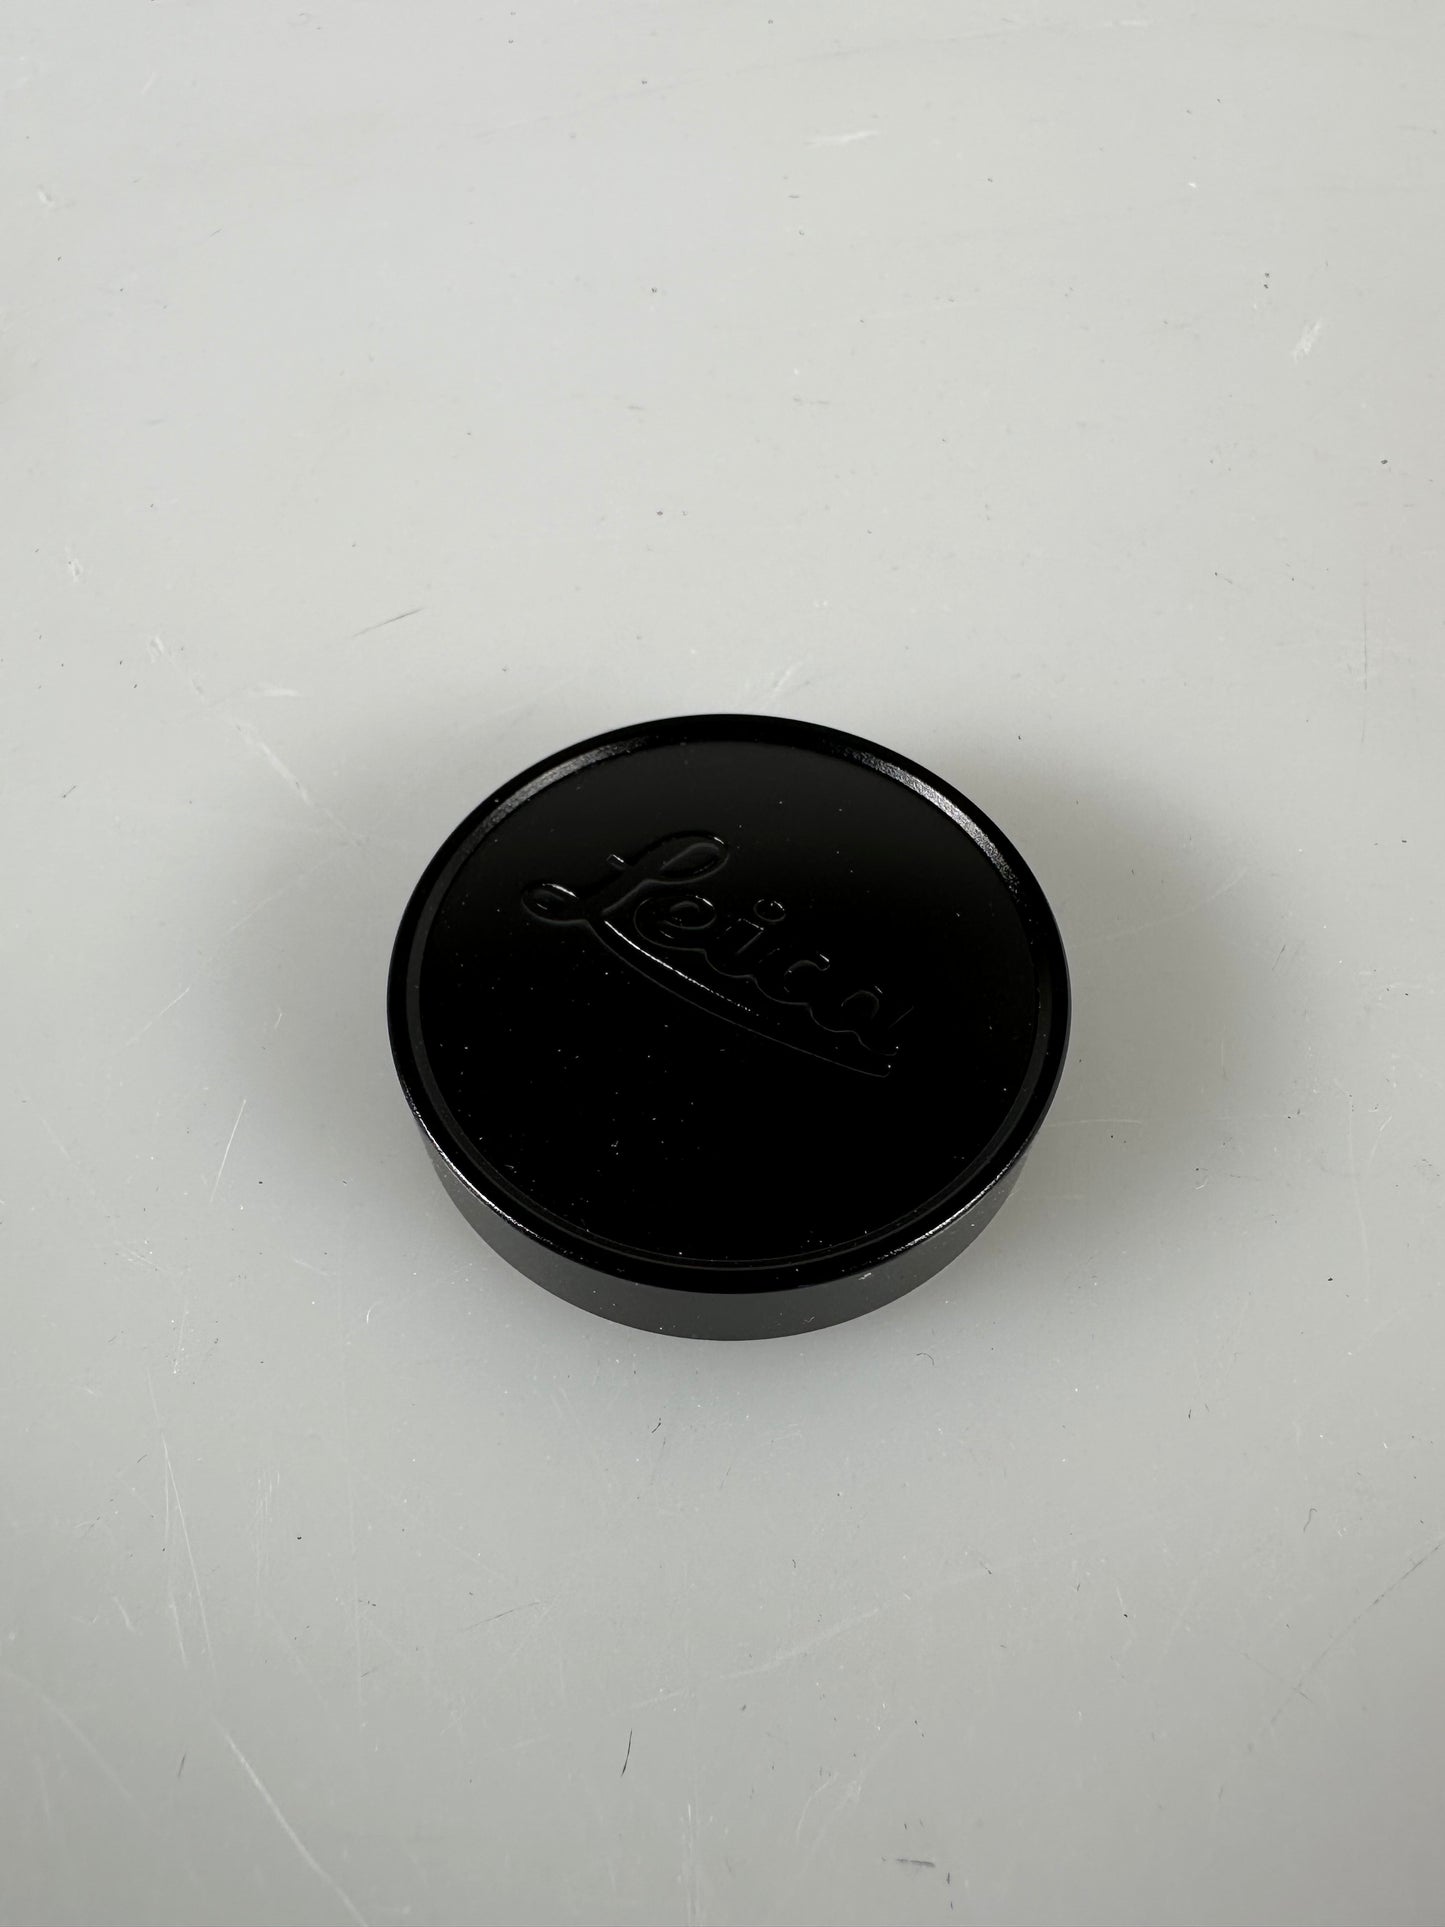 Leica 39mm E39 Front Lens Cap Black Chrome Metal